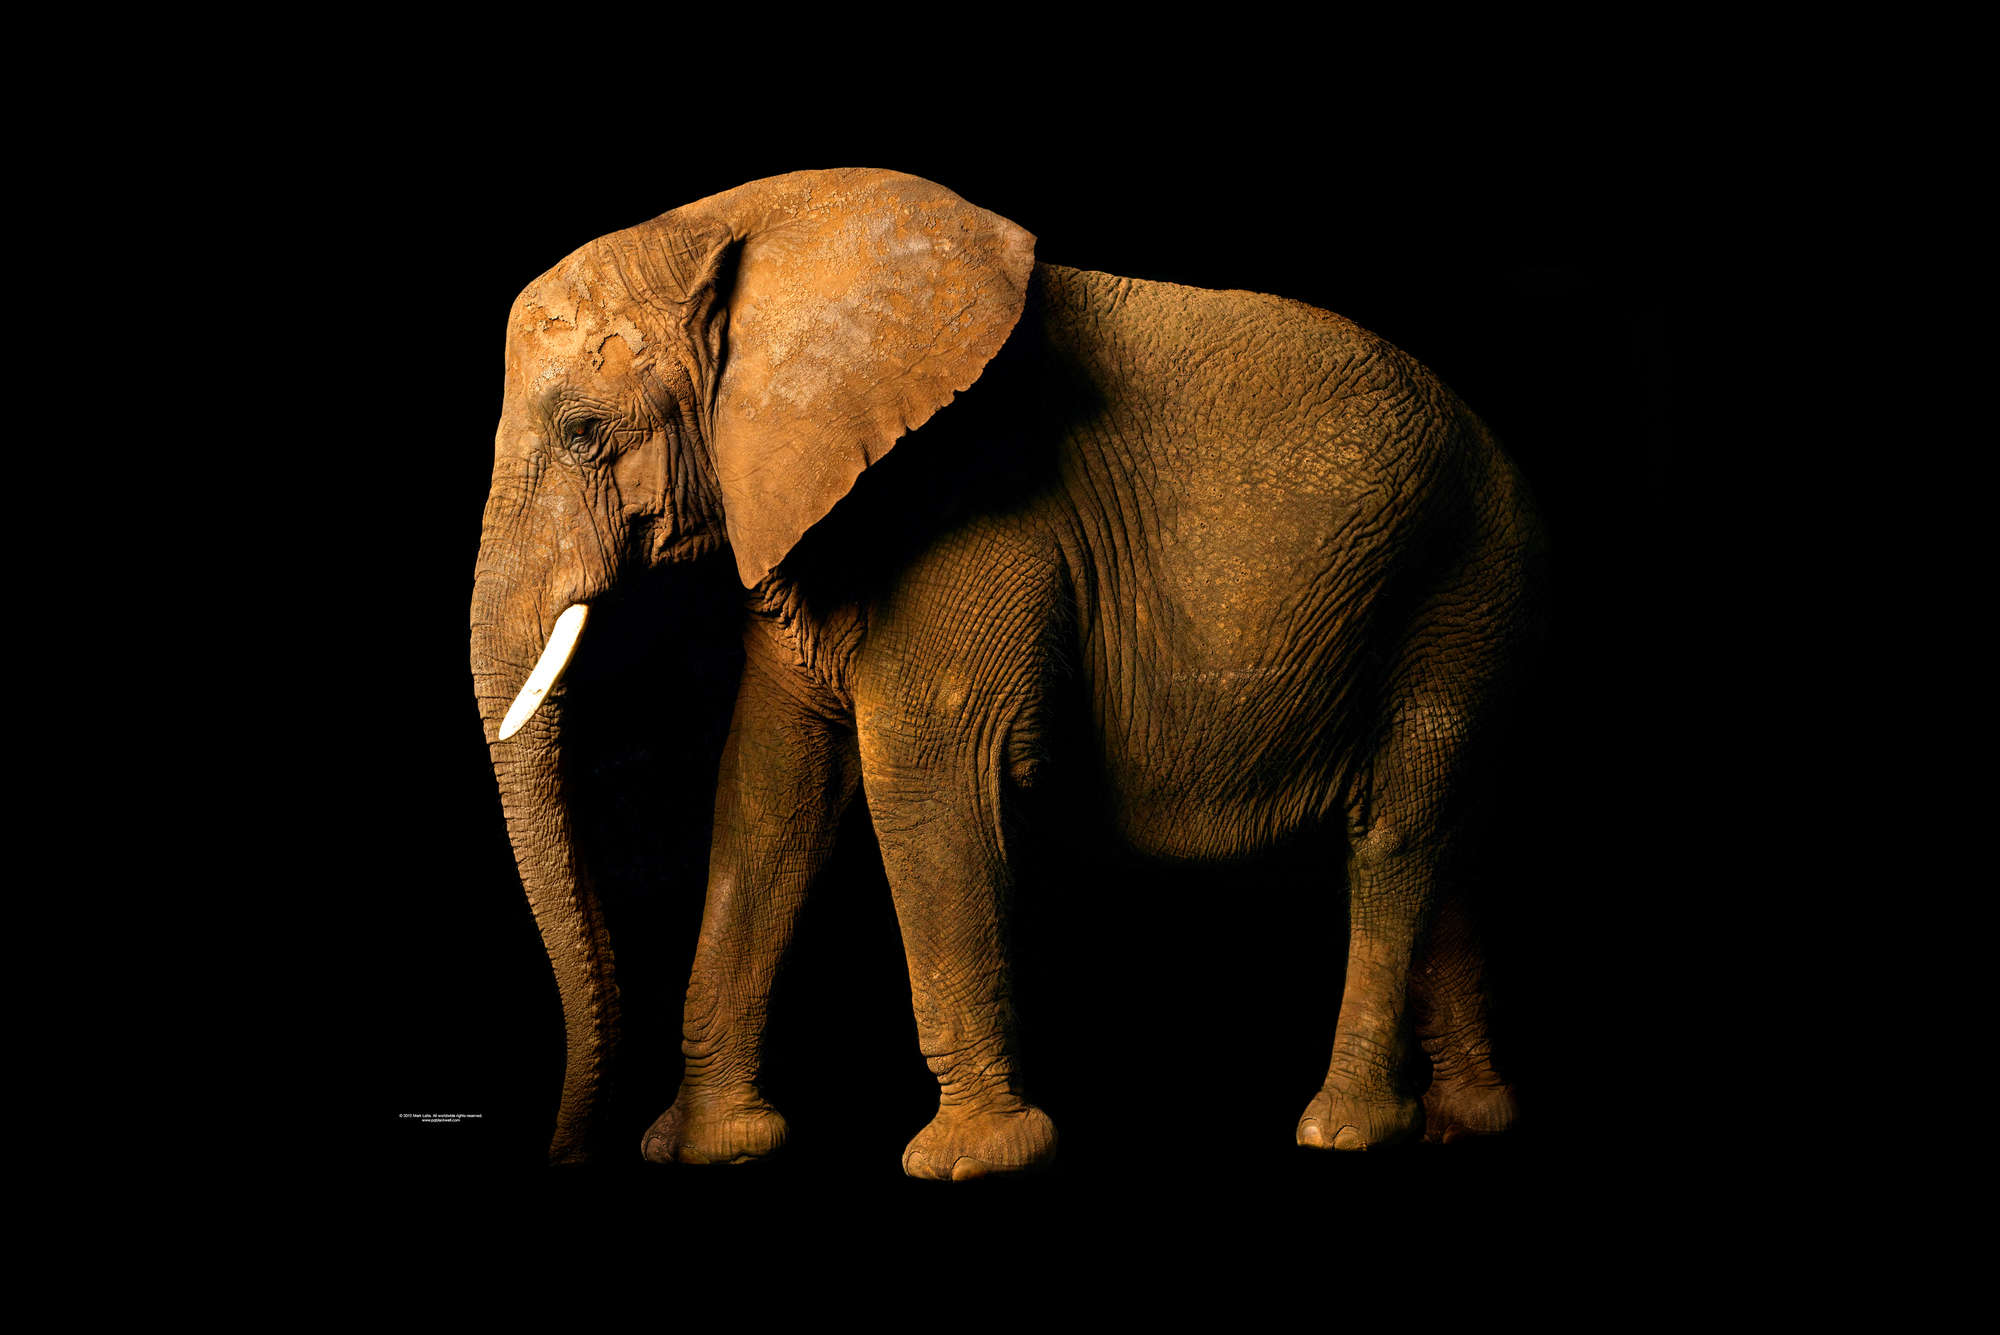             Elefante - papel pintado con retrato de animales
        